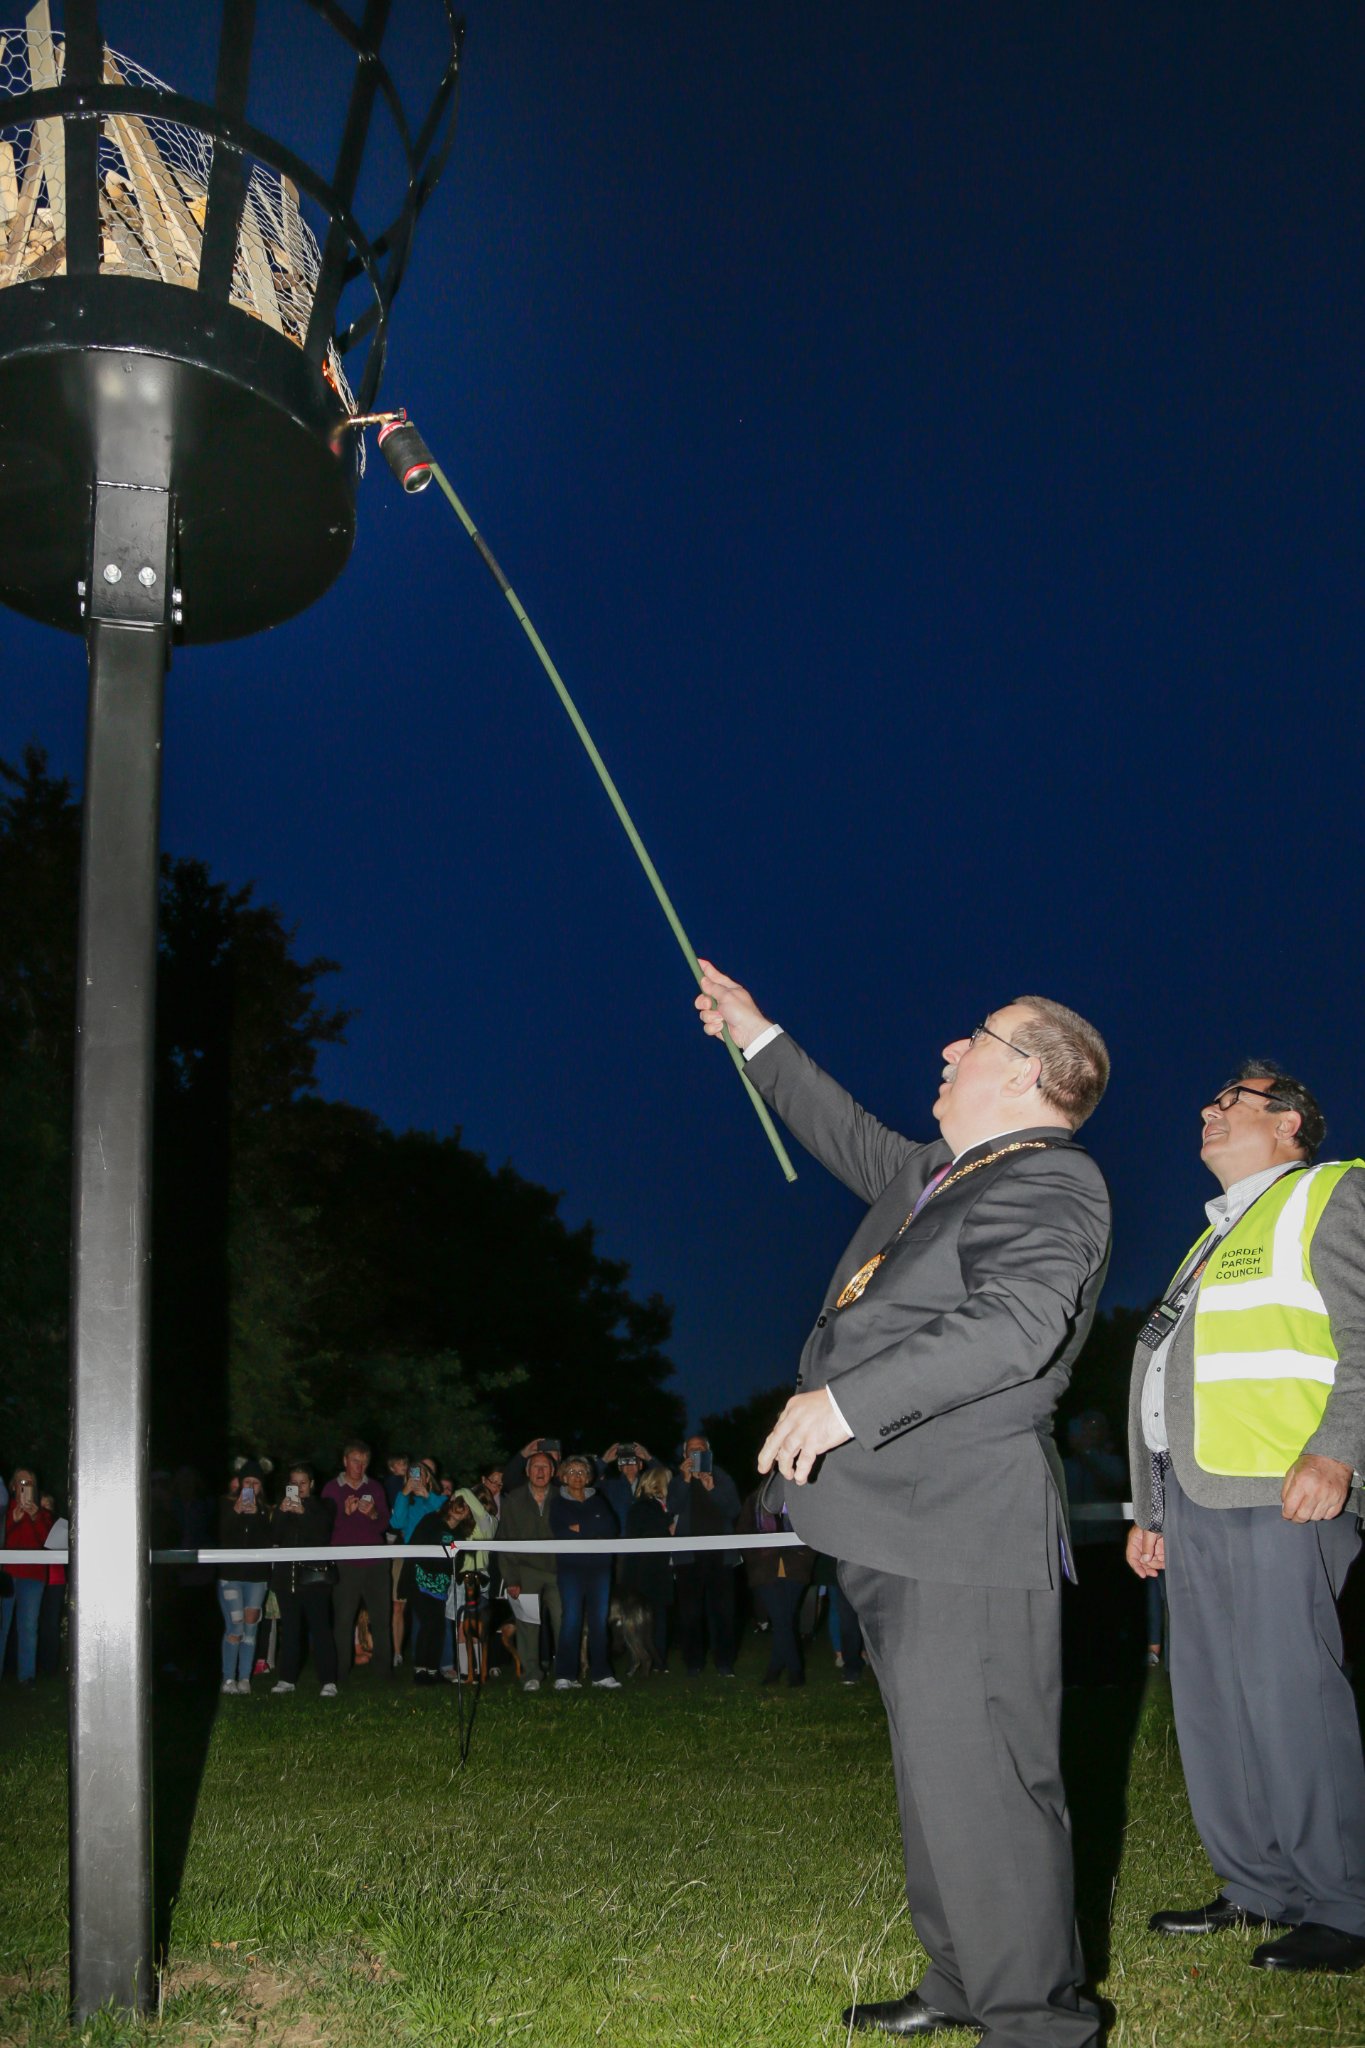 The Mayor of Swale lighting the Beacon